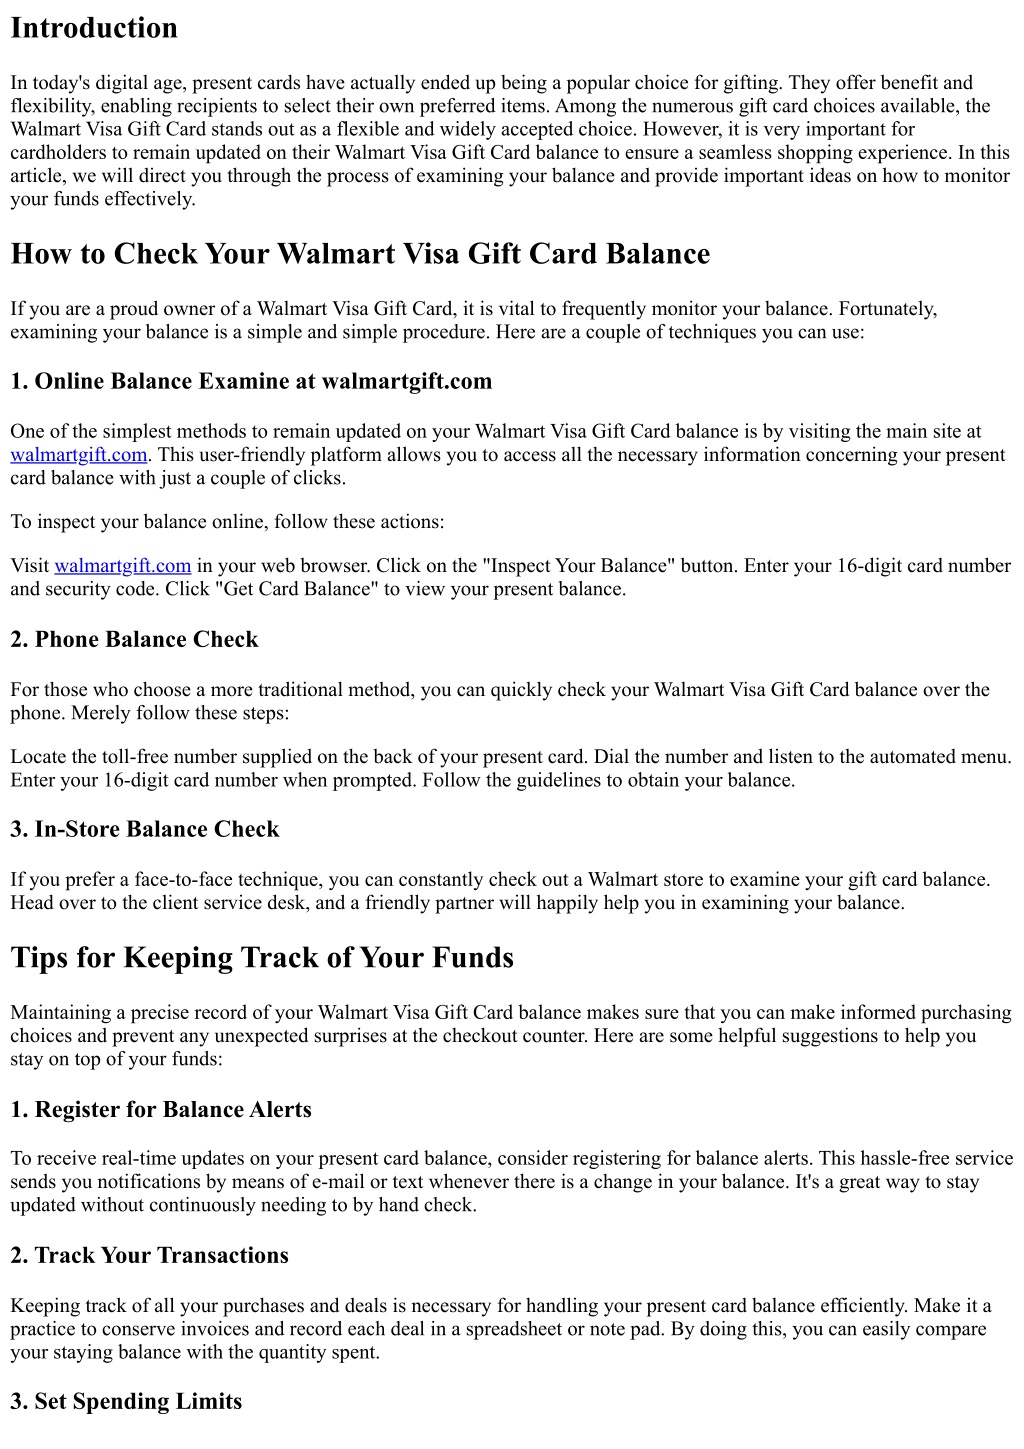 How to Use Walmart Gift Card on Amazon ! - YouTube